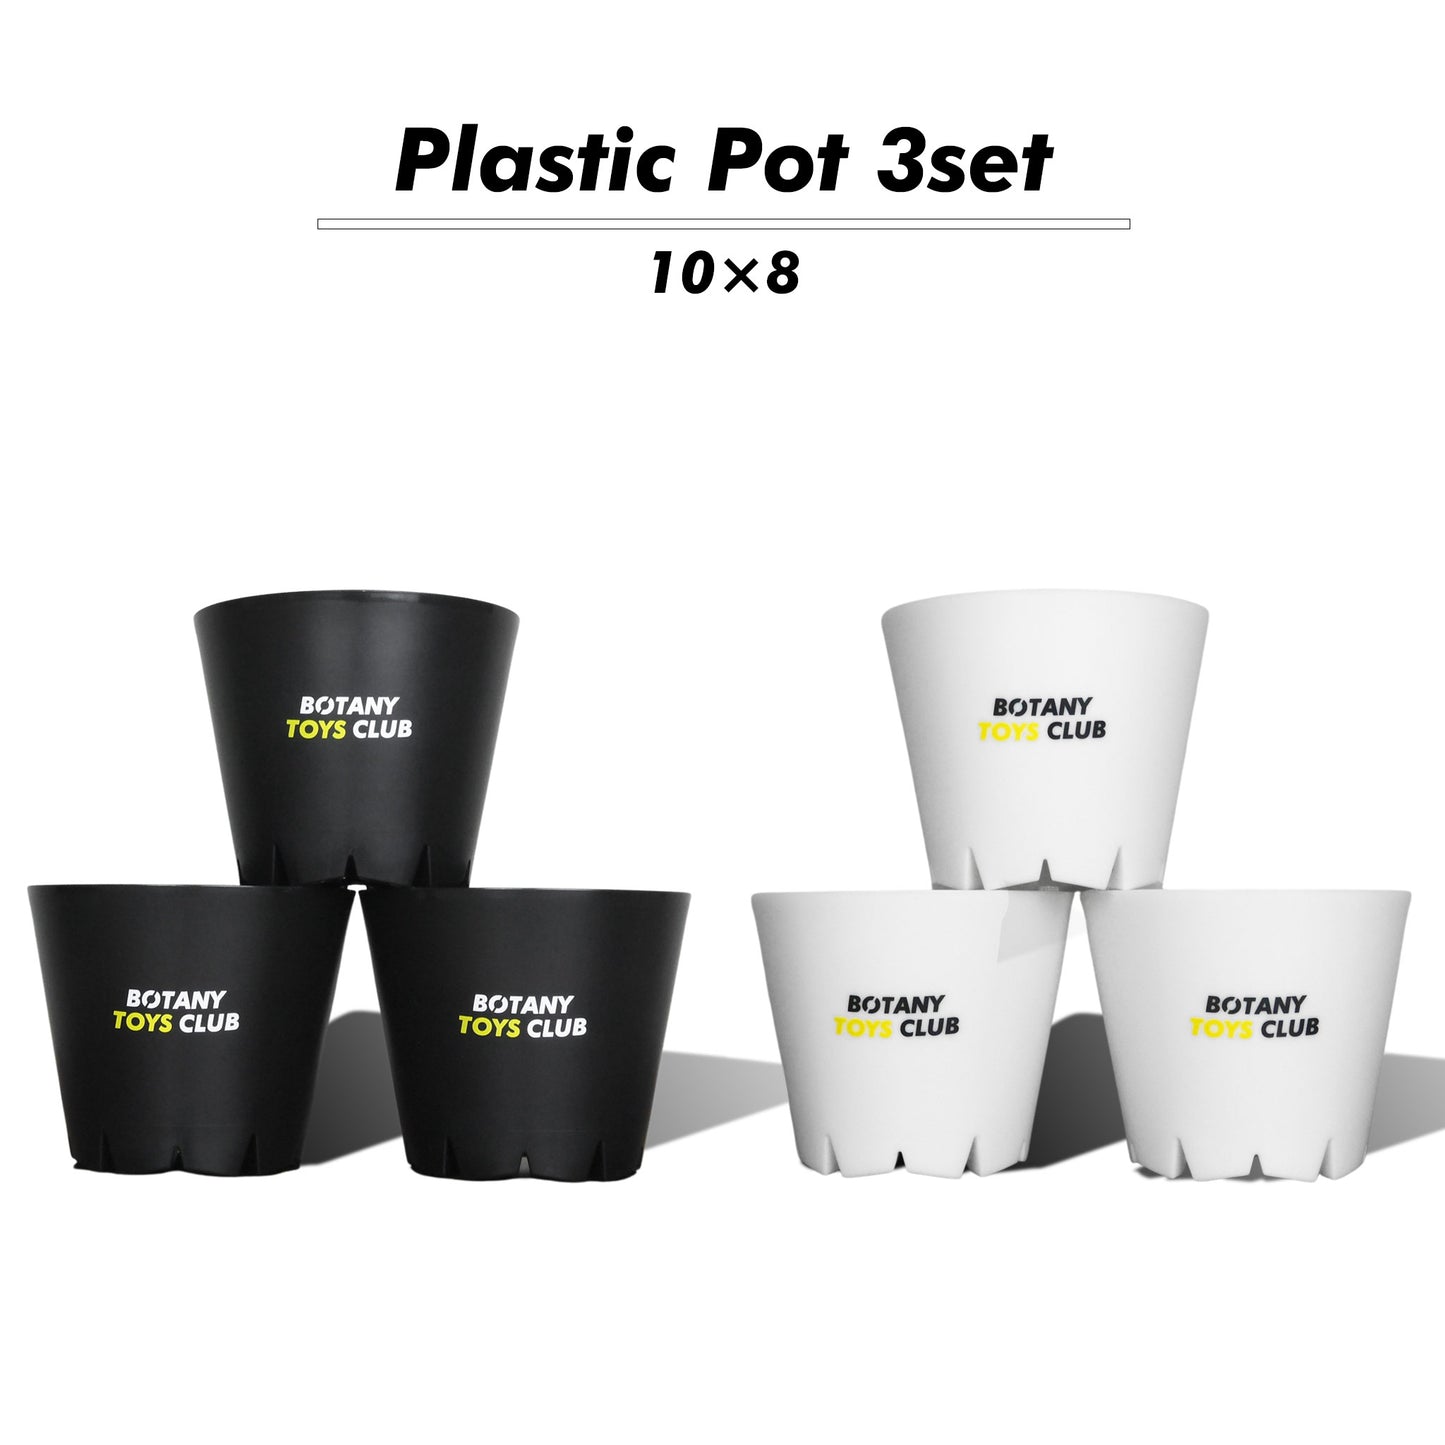 Plastic Pot 3set 10×8